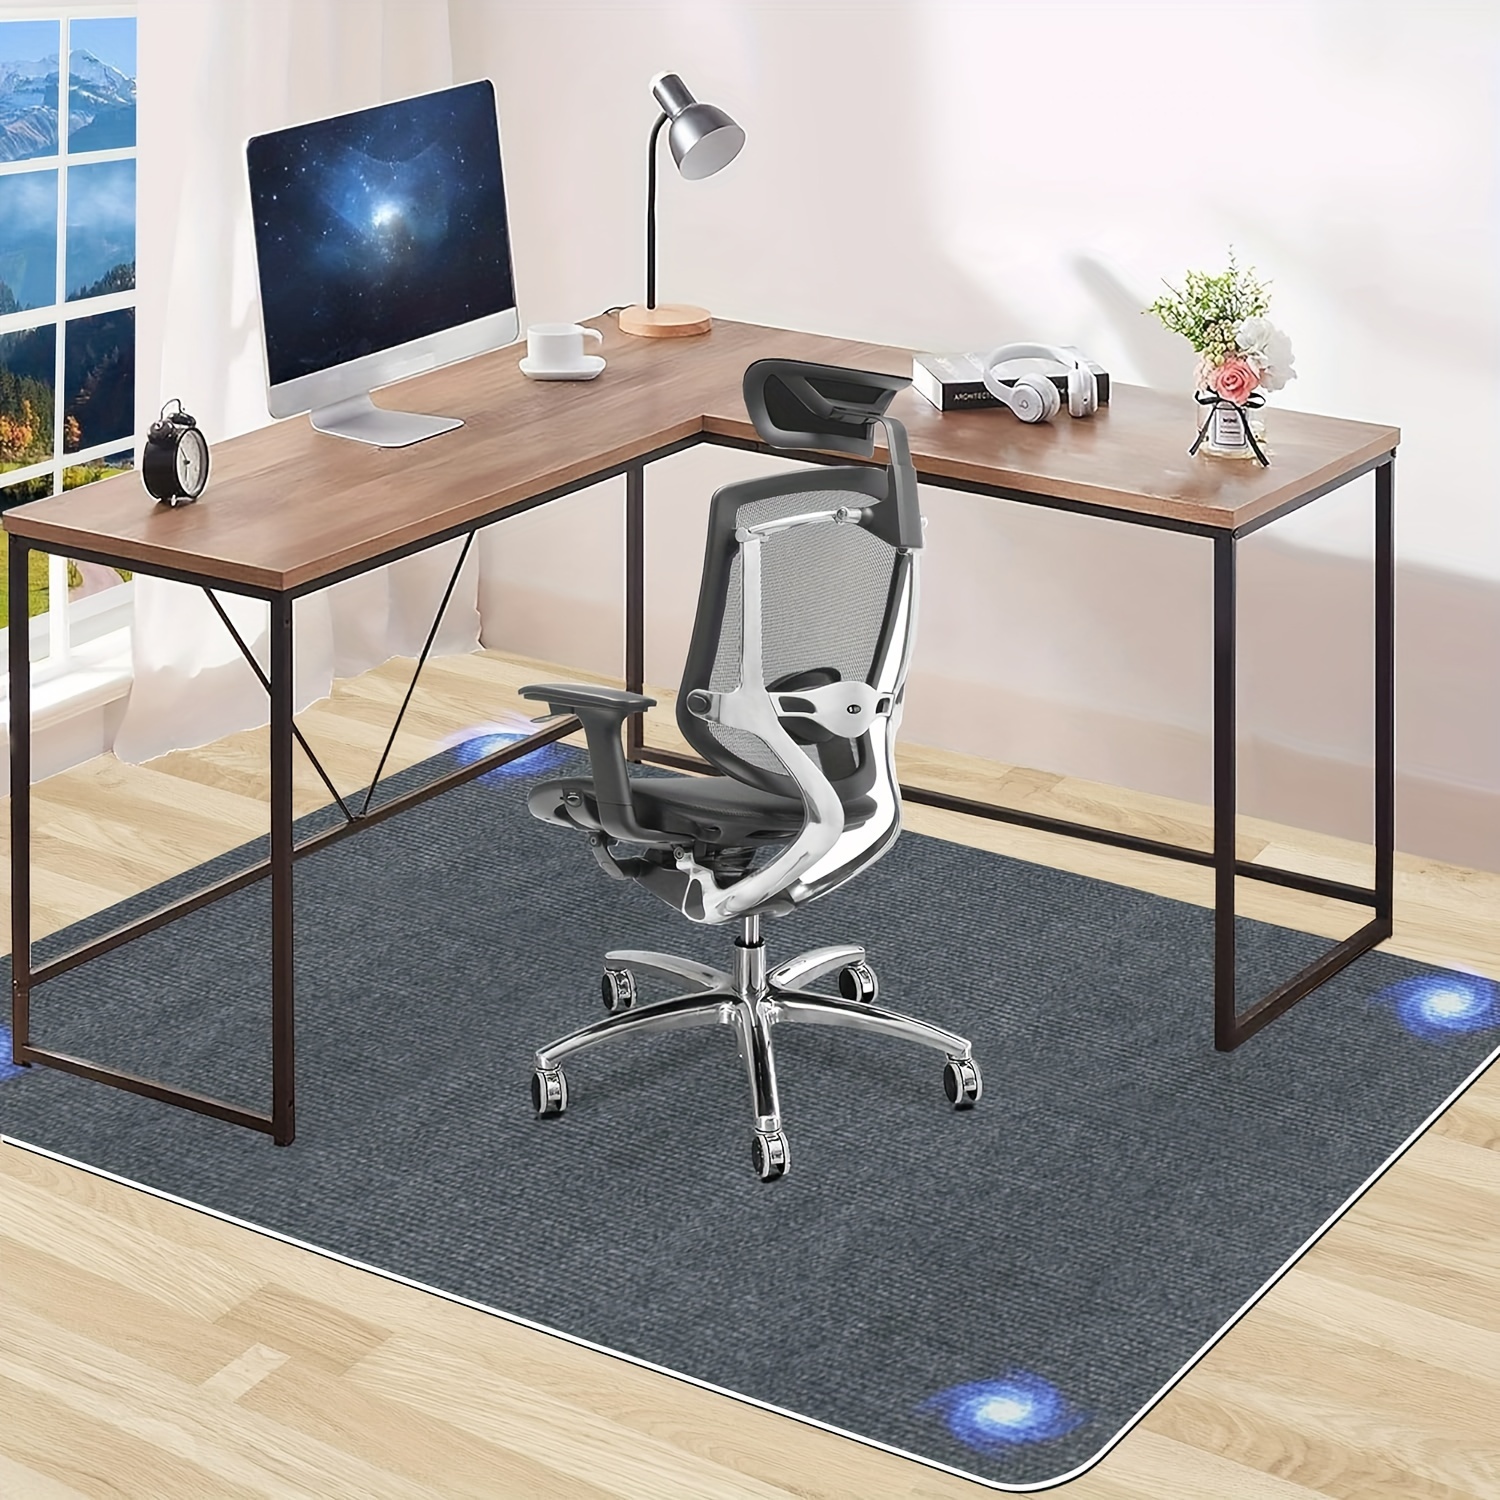 Tapis de sol pour chaise d'ordinateur, chaise pivotante pour bureau, bureau,  course, étude, cuisine, antidérapant - AliExpress